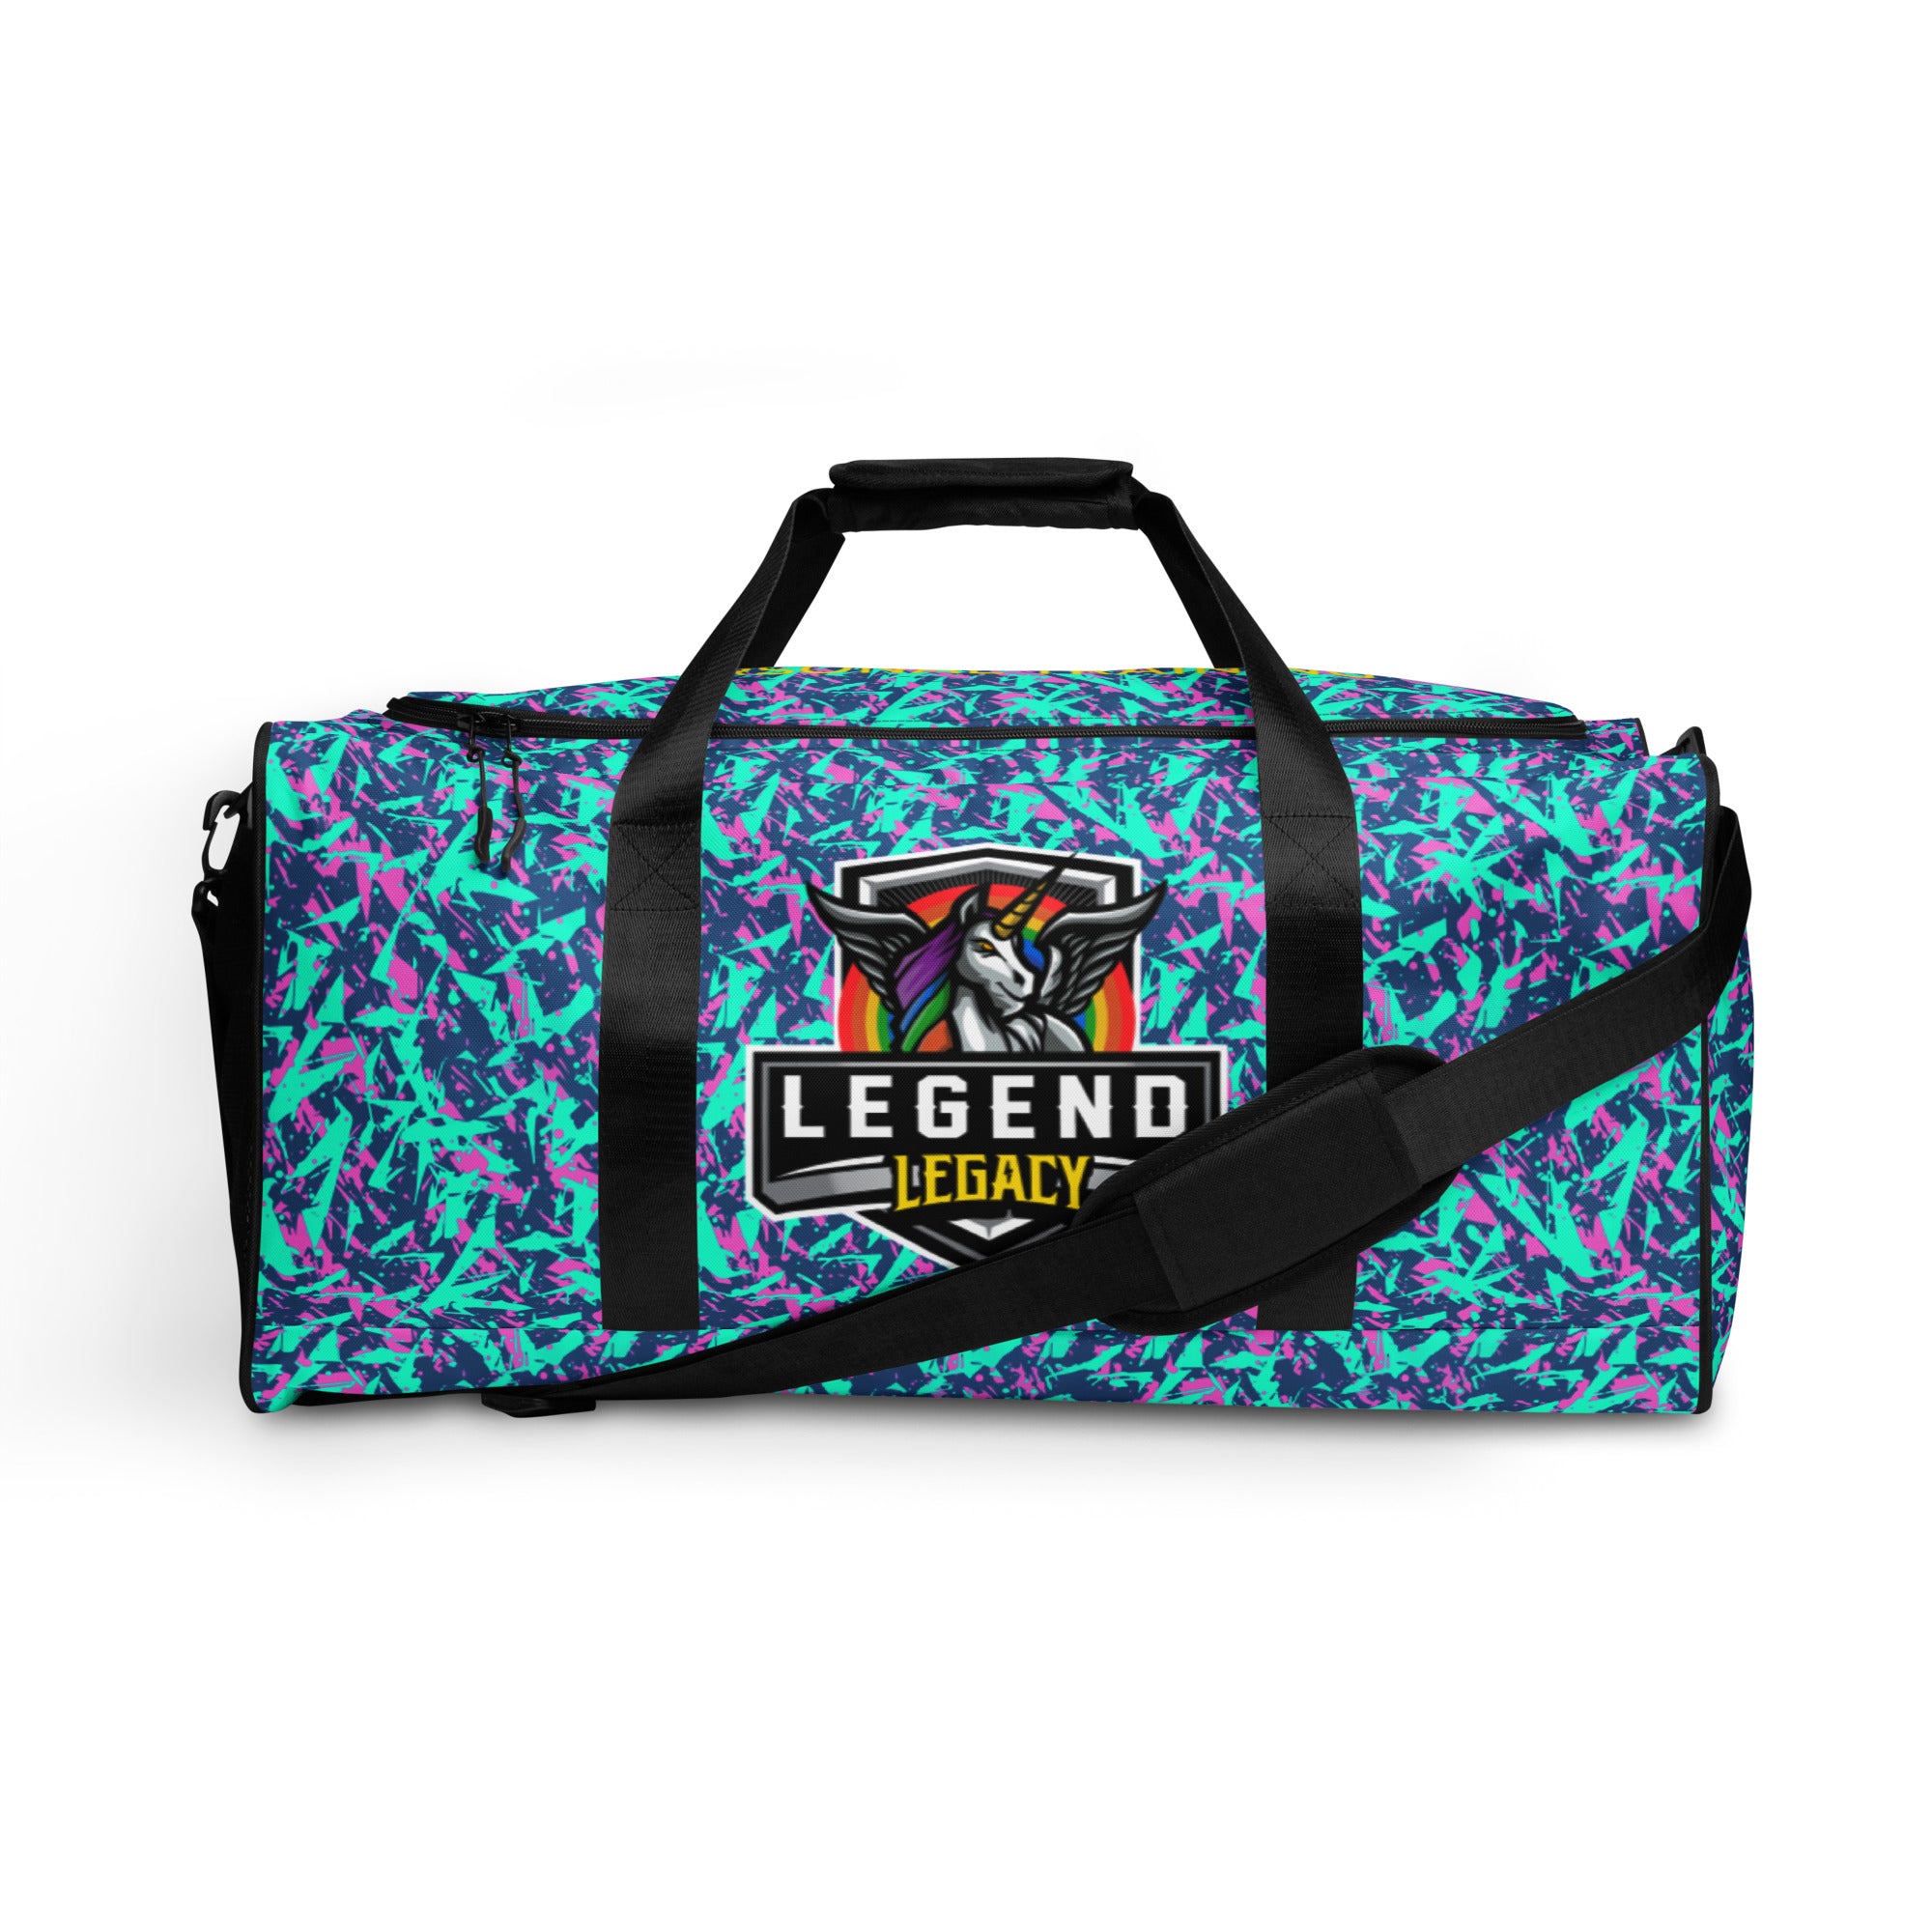 Legend Duffle bag